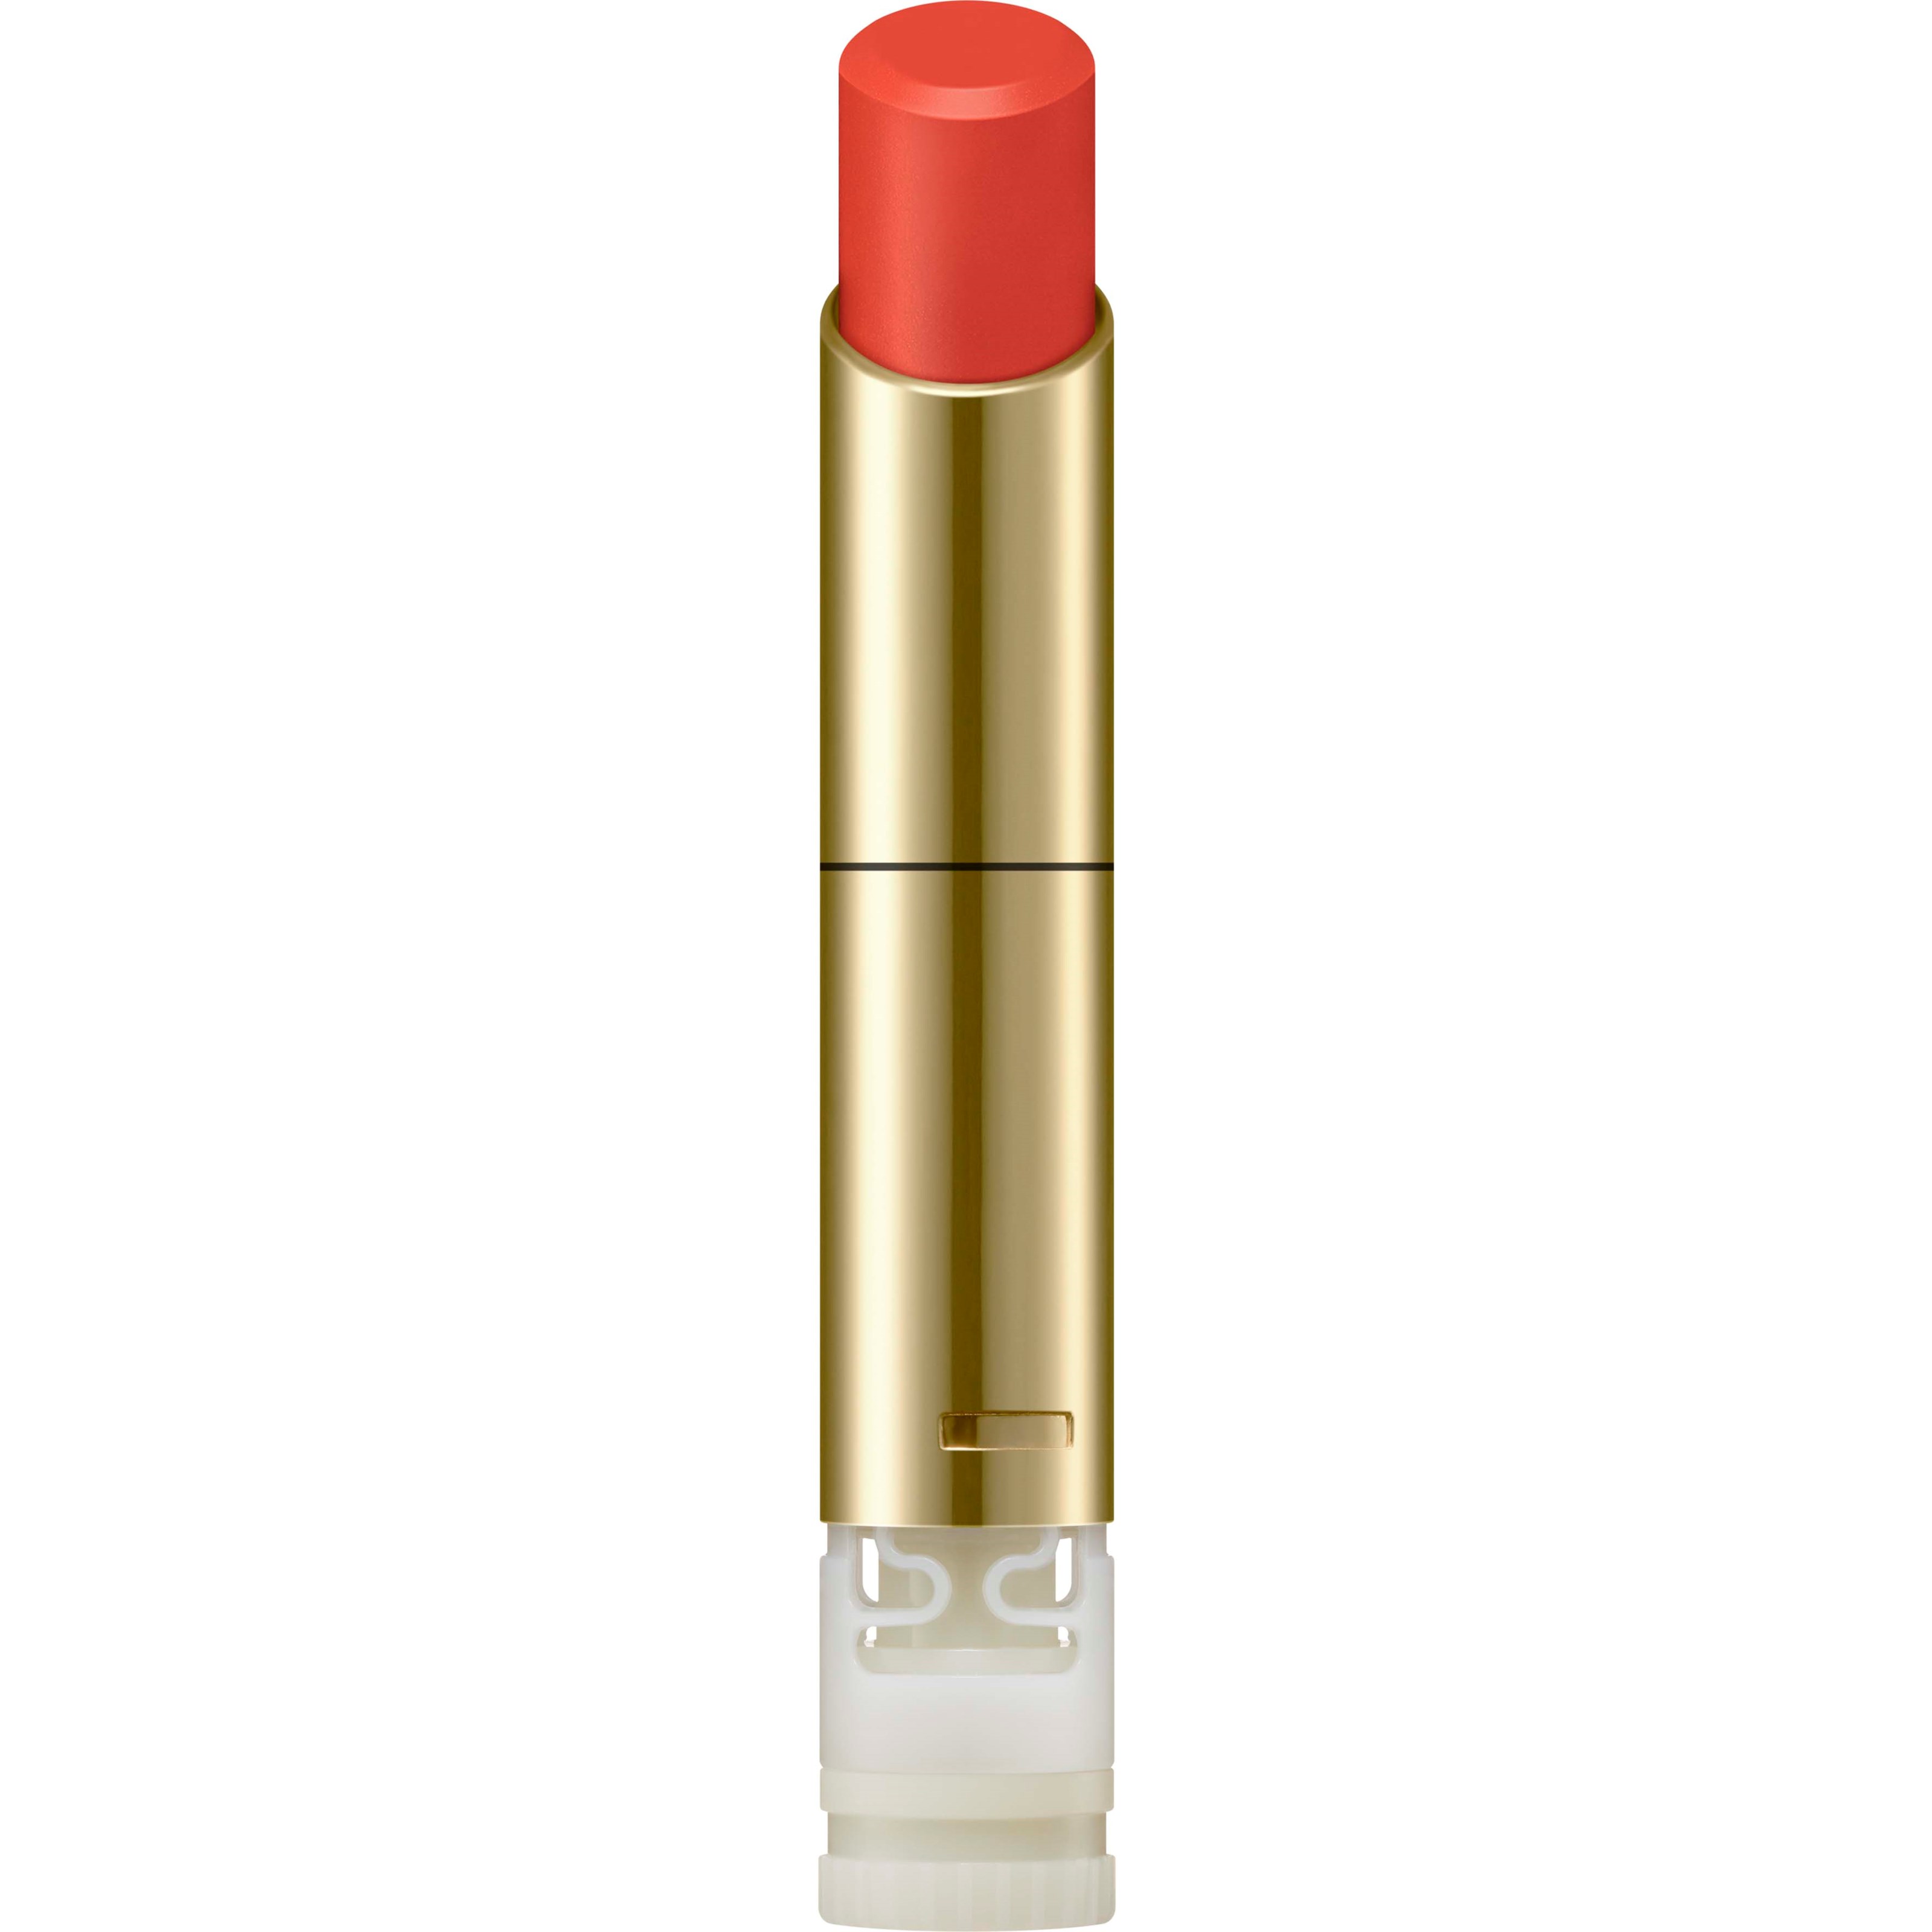 Bilde av Sensai Lasting Plump Lipstick Lp02 Vivid Orange